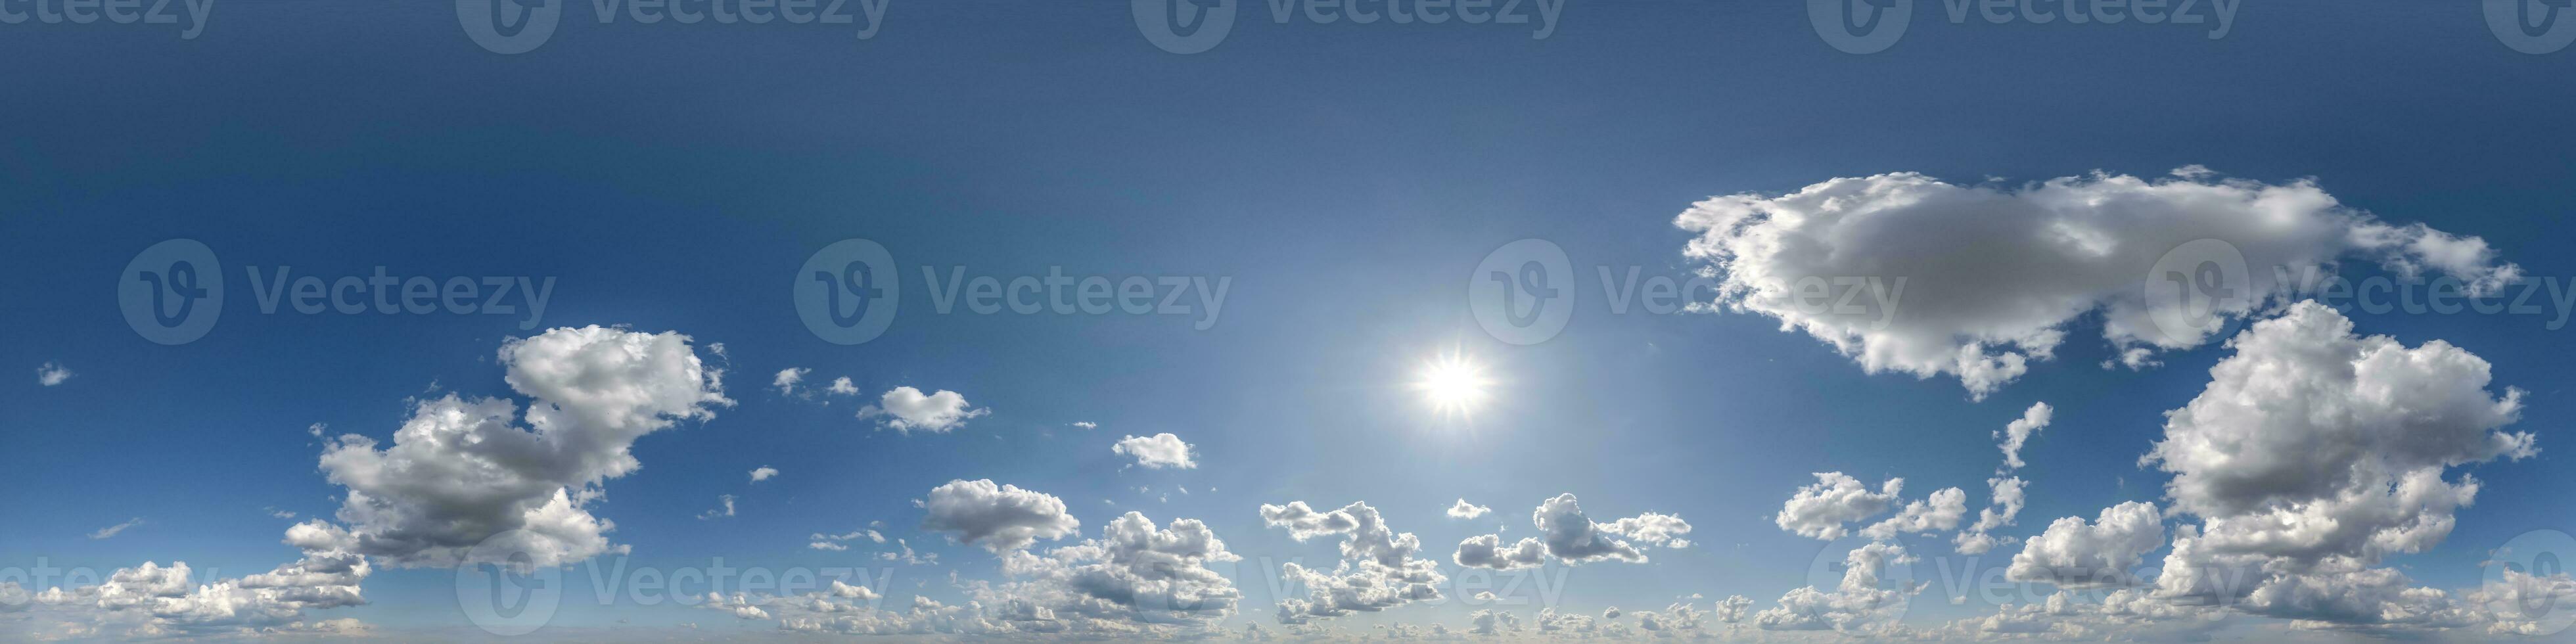 blå himmel 360 panorama med ljus moln i hdri sömlös sfärisk panorama med full zenit eller himmel kupol för 3d visualisering, himmel ersättning för antenn Drönare panorama i likriktad formatera foto